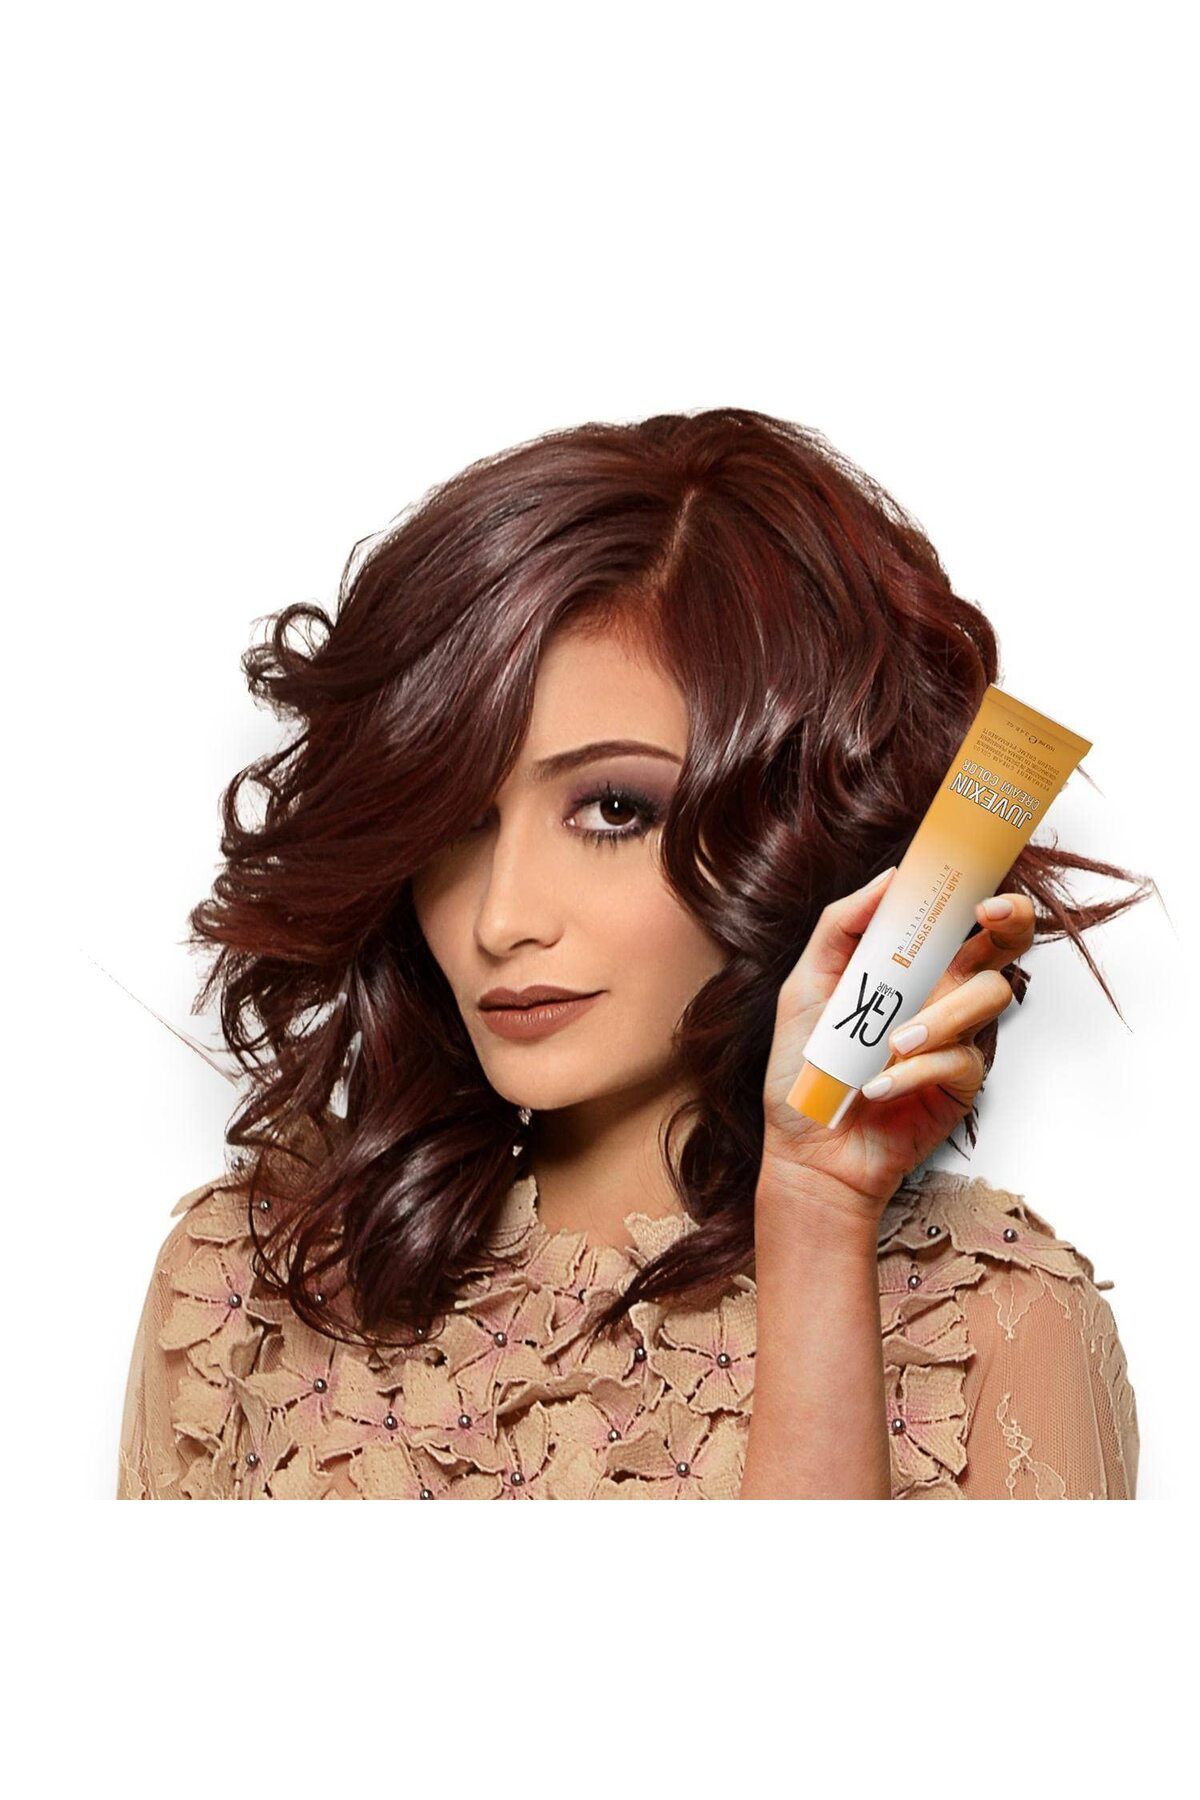 GK HAIR Juvexin Cream Color Saç Boyası 100 ml 9.0 yoğun Çok Açık Sarı